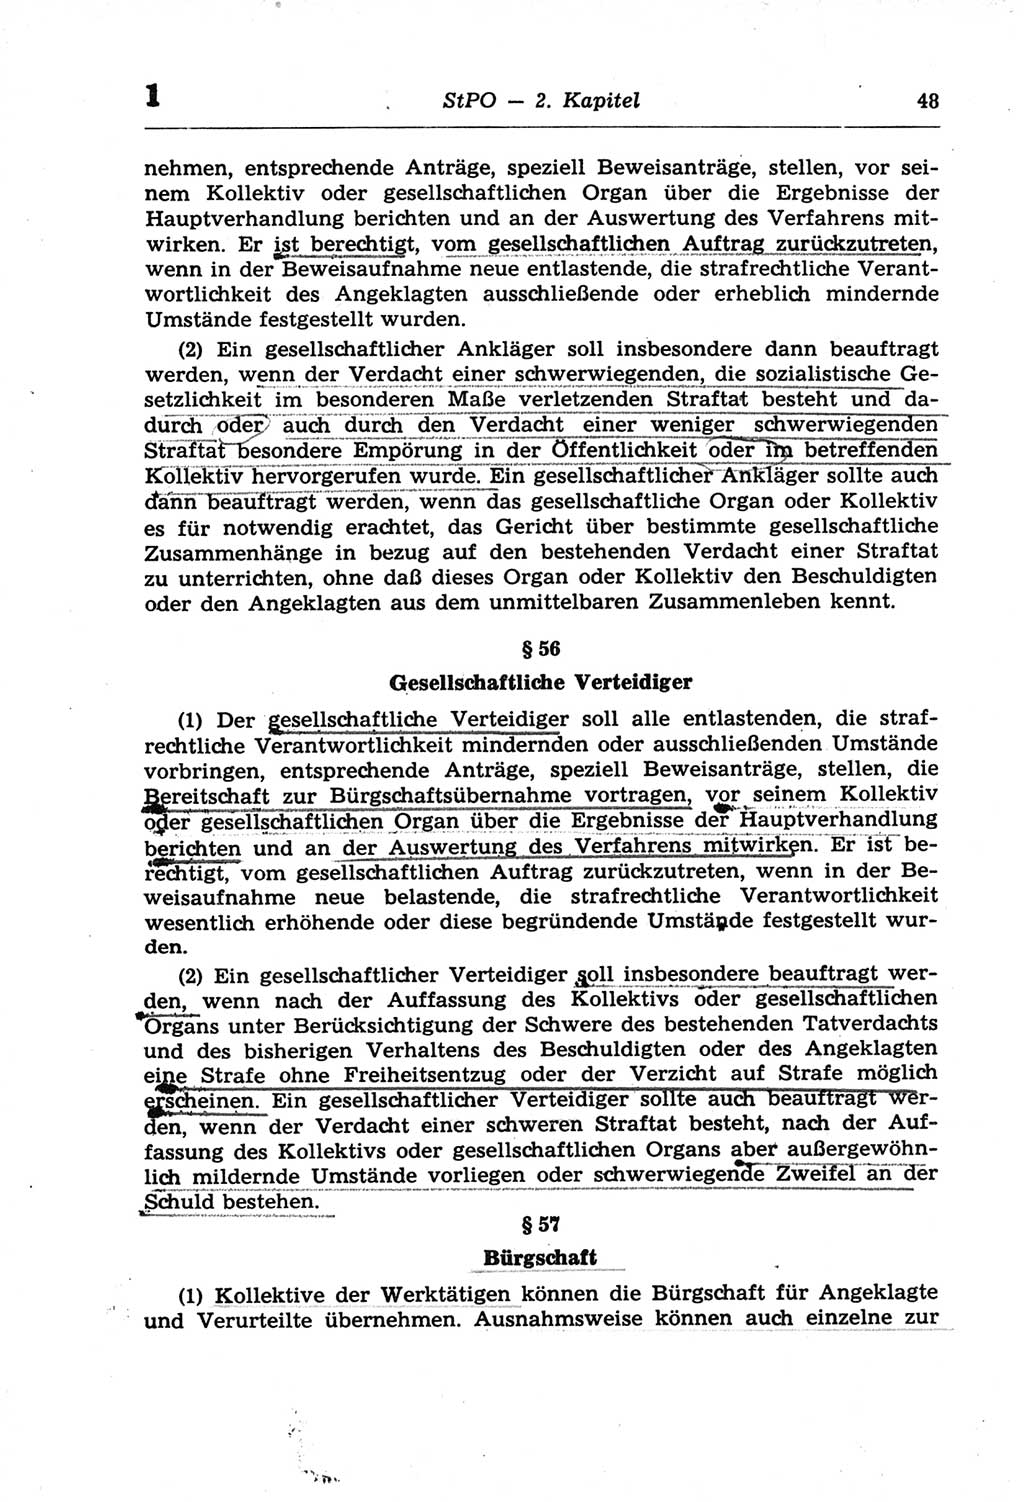 Strafprozeßordnung (StPO) der Deutschen Demokratischen Republik (DDR) und angrenzende Gesetze und Bestimmungen 1968, Seite 48 (StPO Ges. Bstgn. DDR 1968, S. 48)